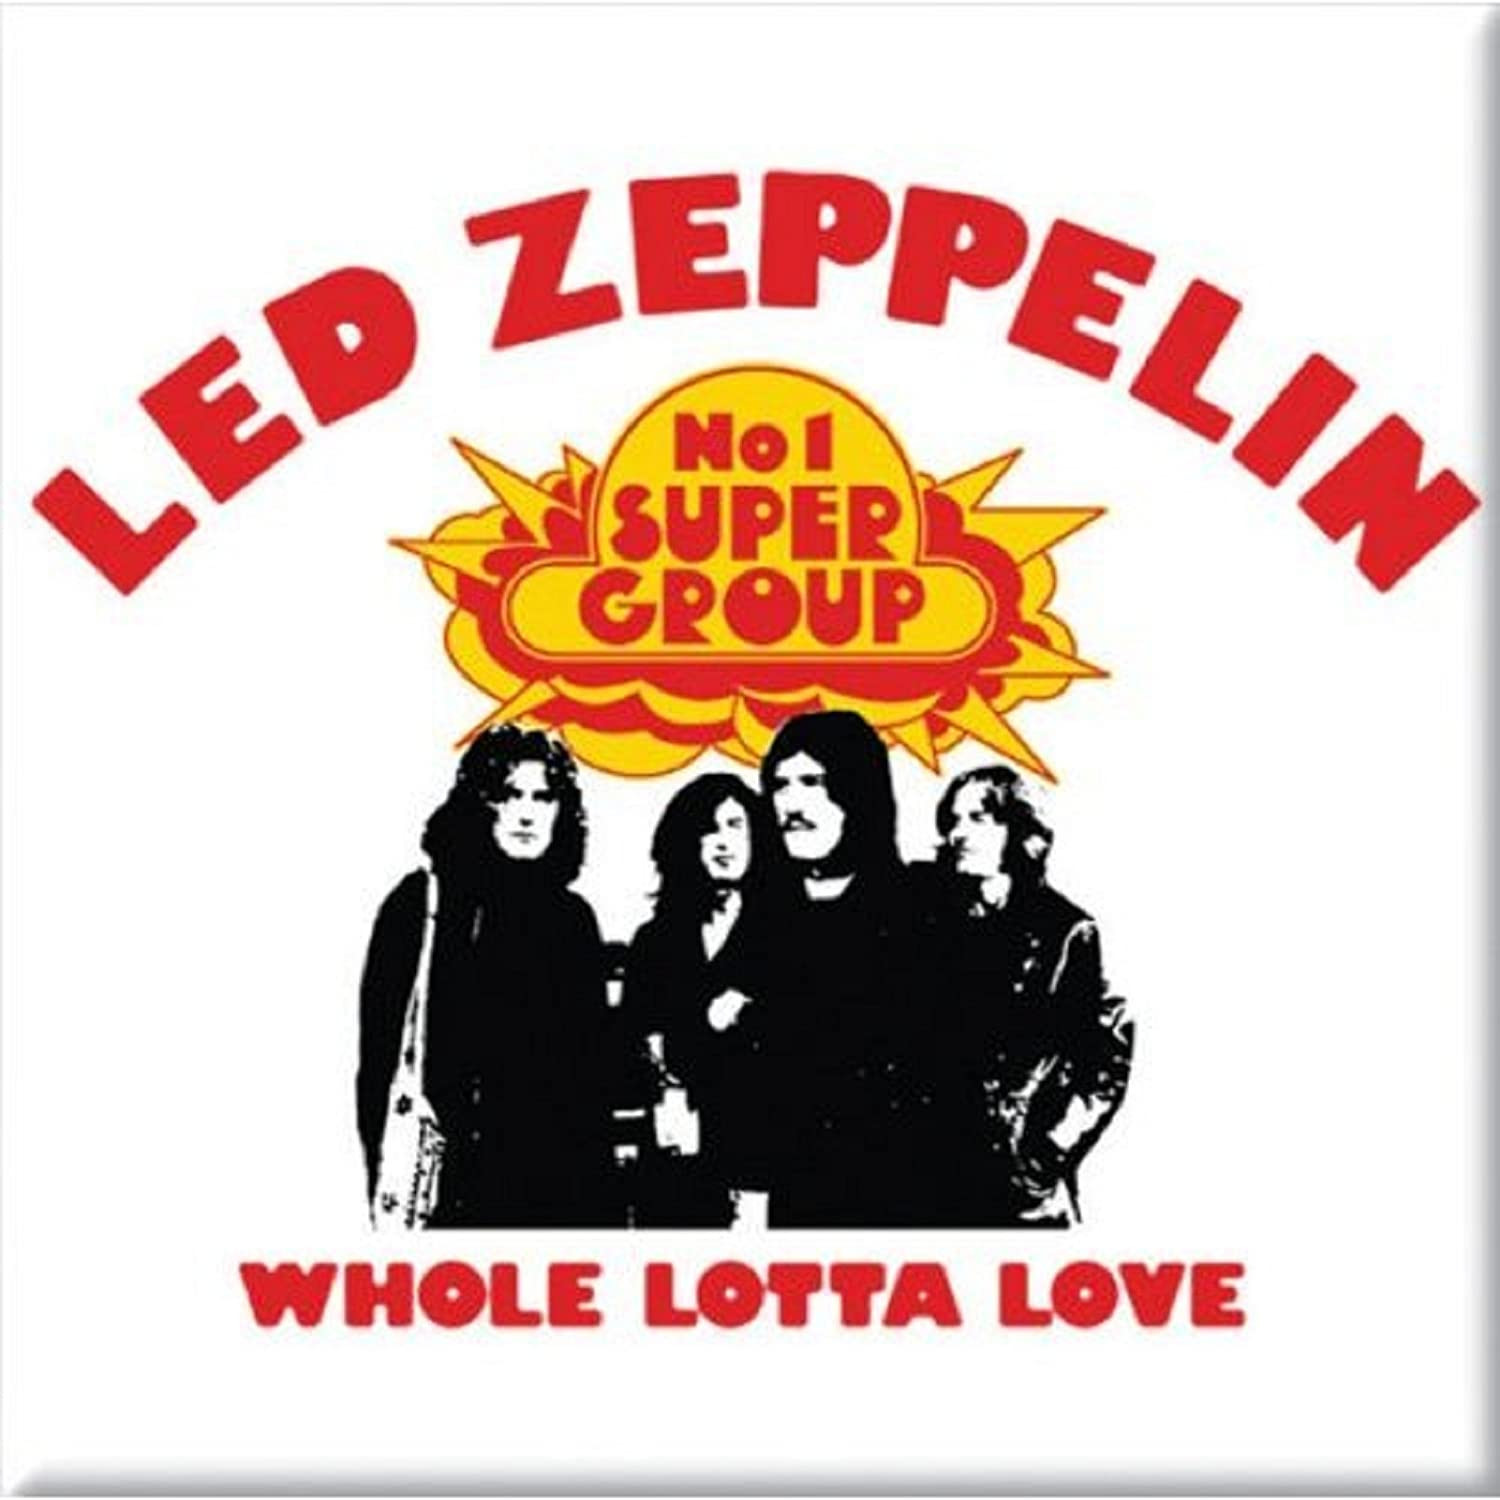 Led zeppelin whole. Группа led Zeppelin. Led Zeppelin 1969. Led Zeppelin «whole Lotta Love» 1969. 1969 Led Zeppelin II обложка.